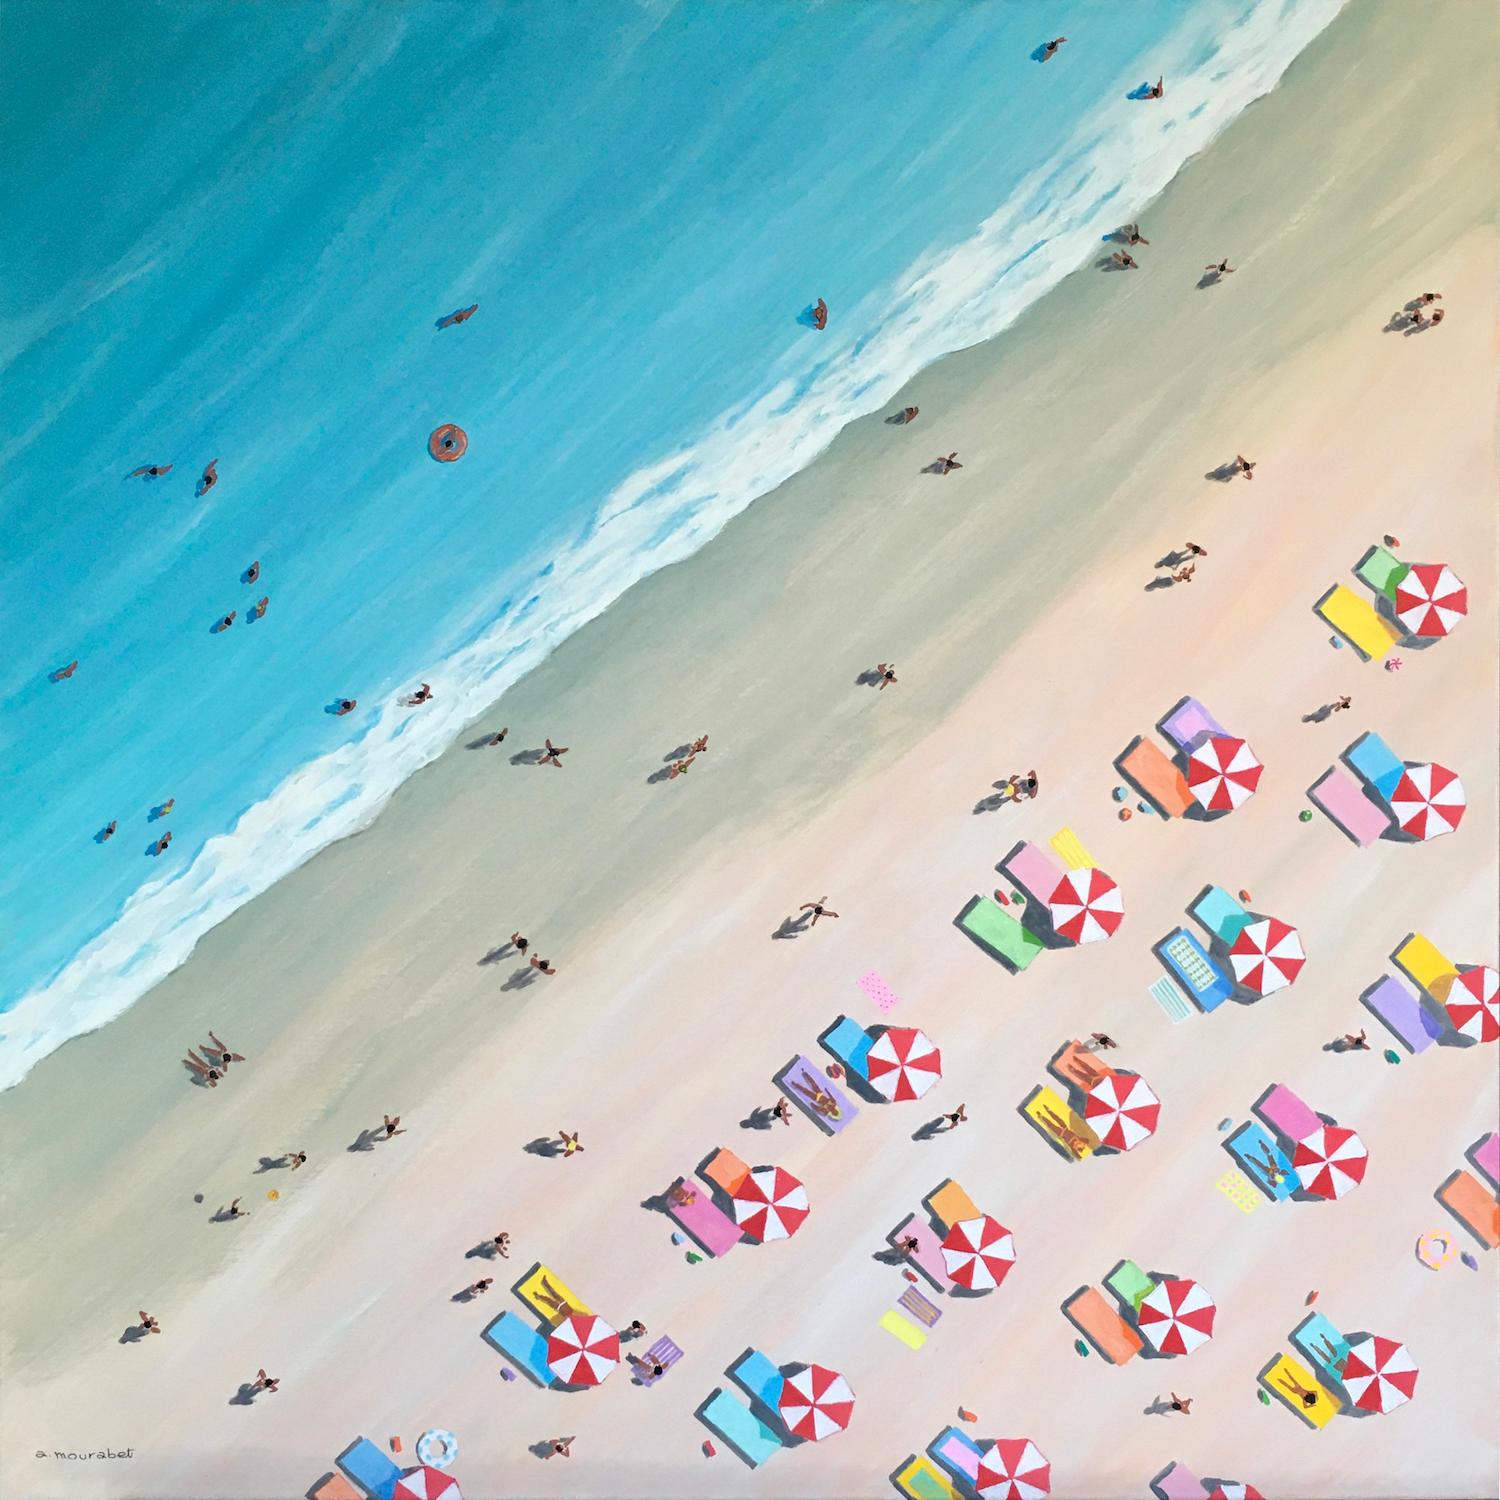 Journée à la plage par Ali Mourabet peinture contemporaine 